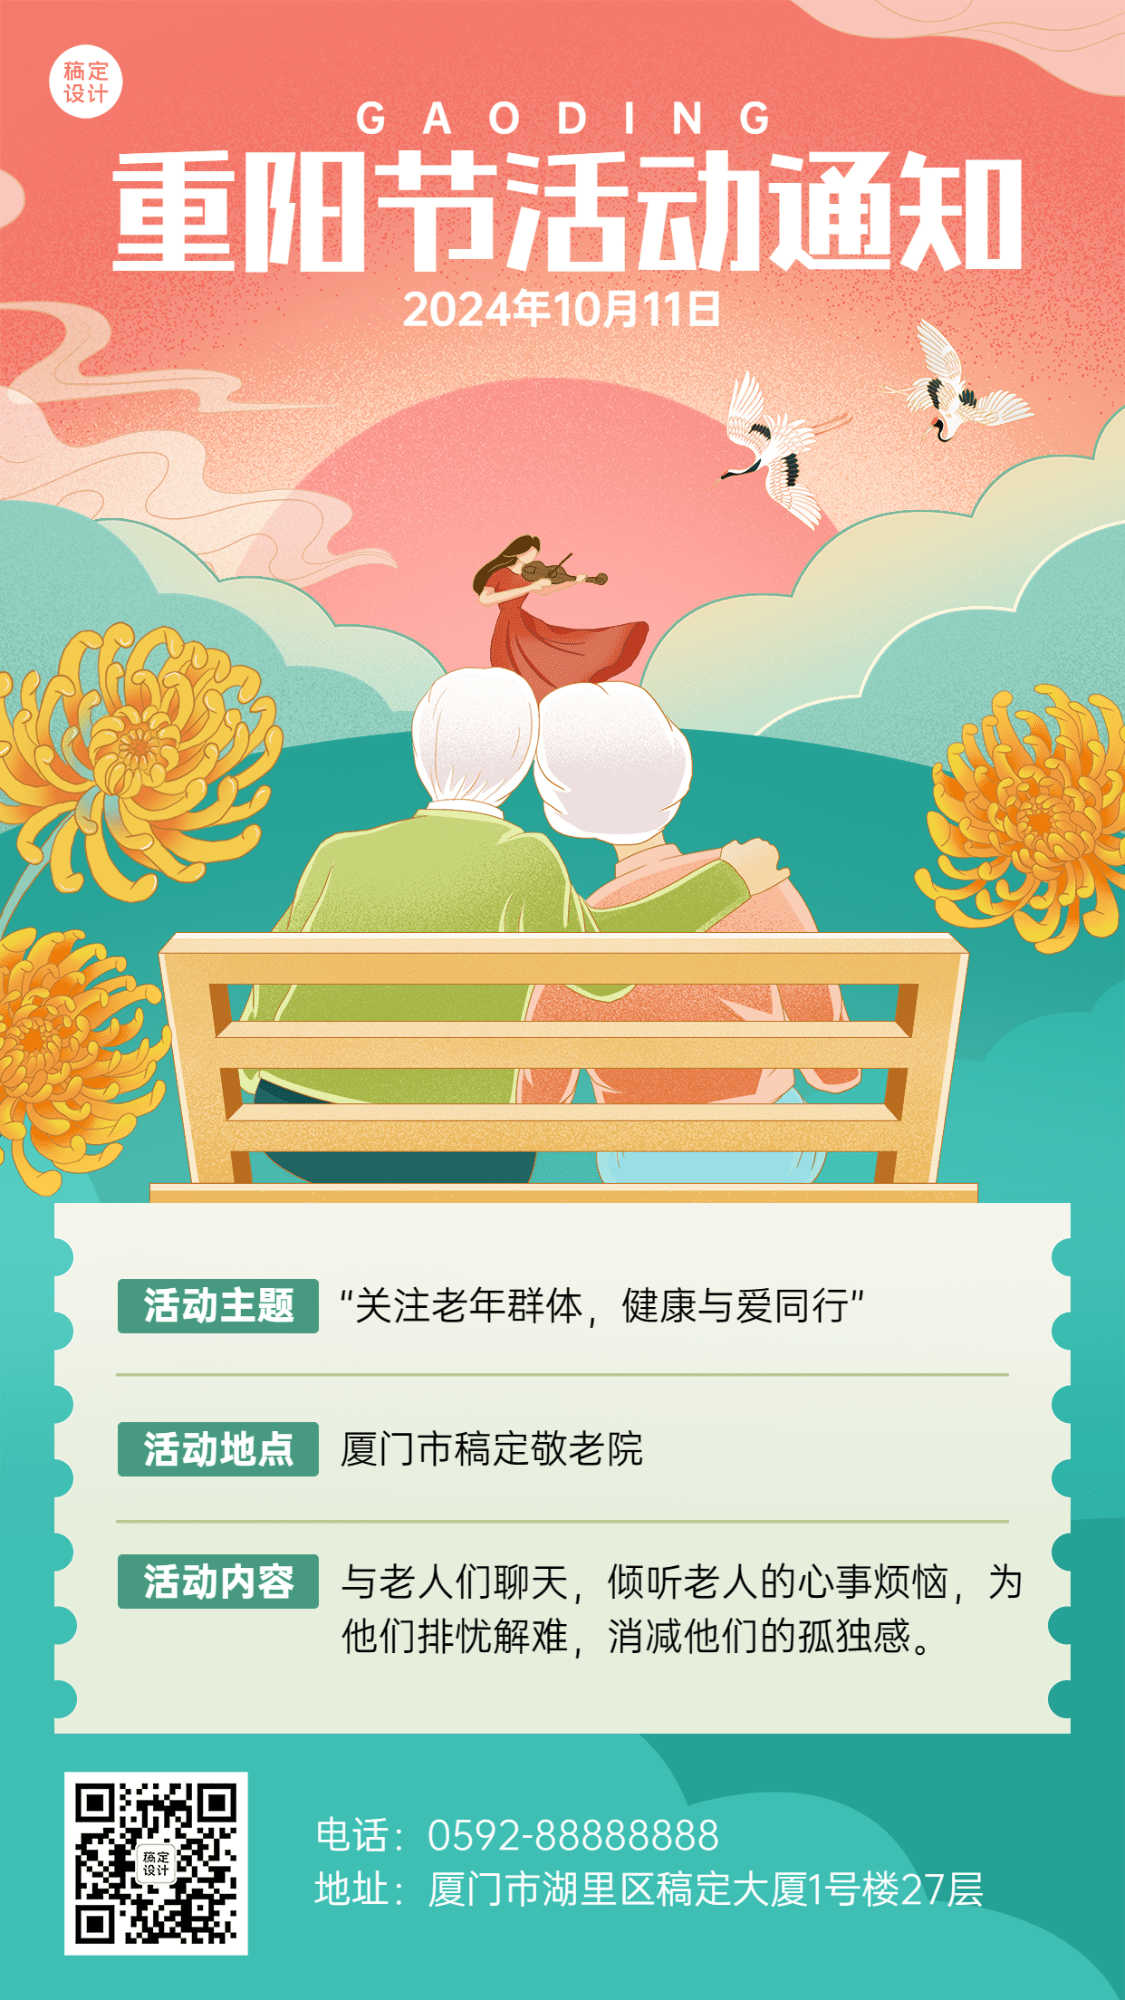 重阳节节日活动插画手机海报